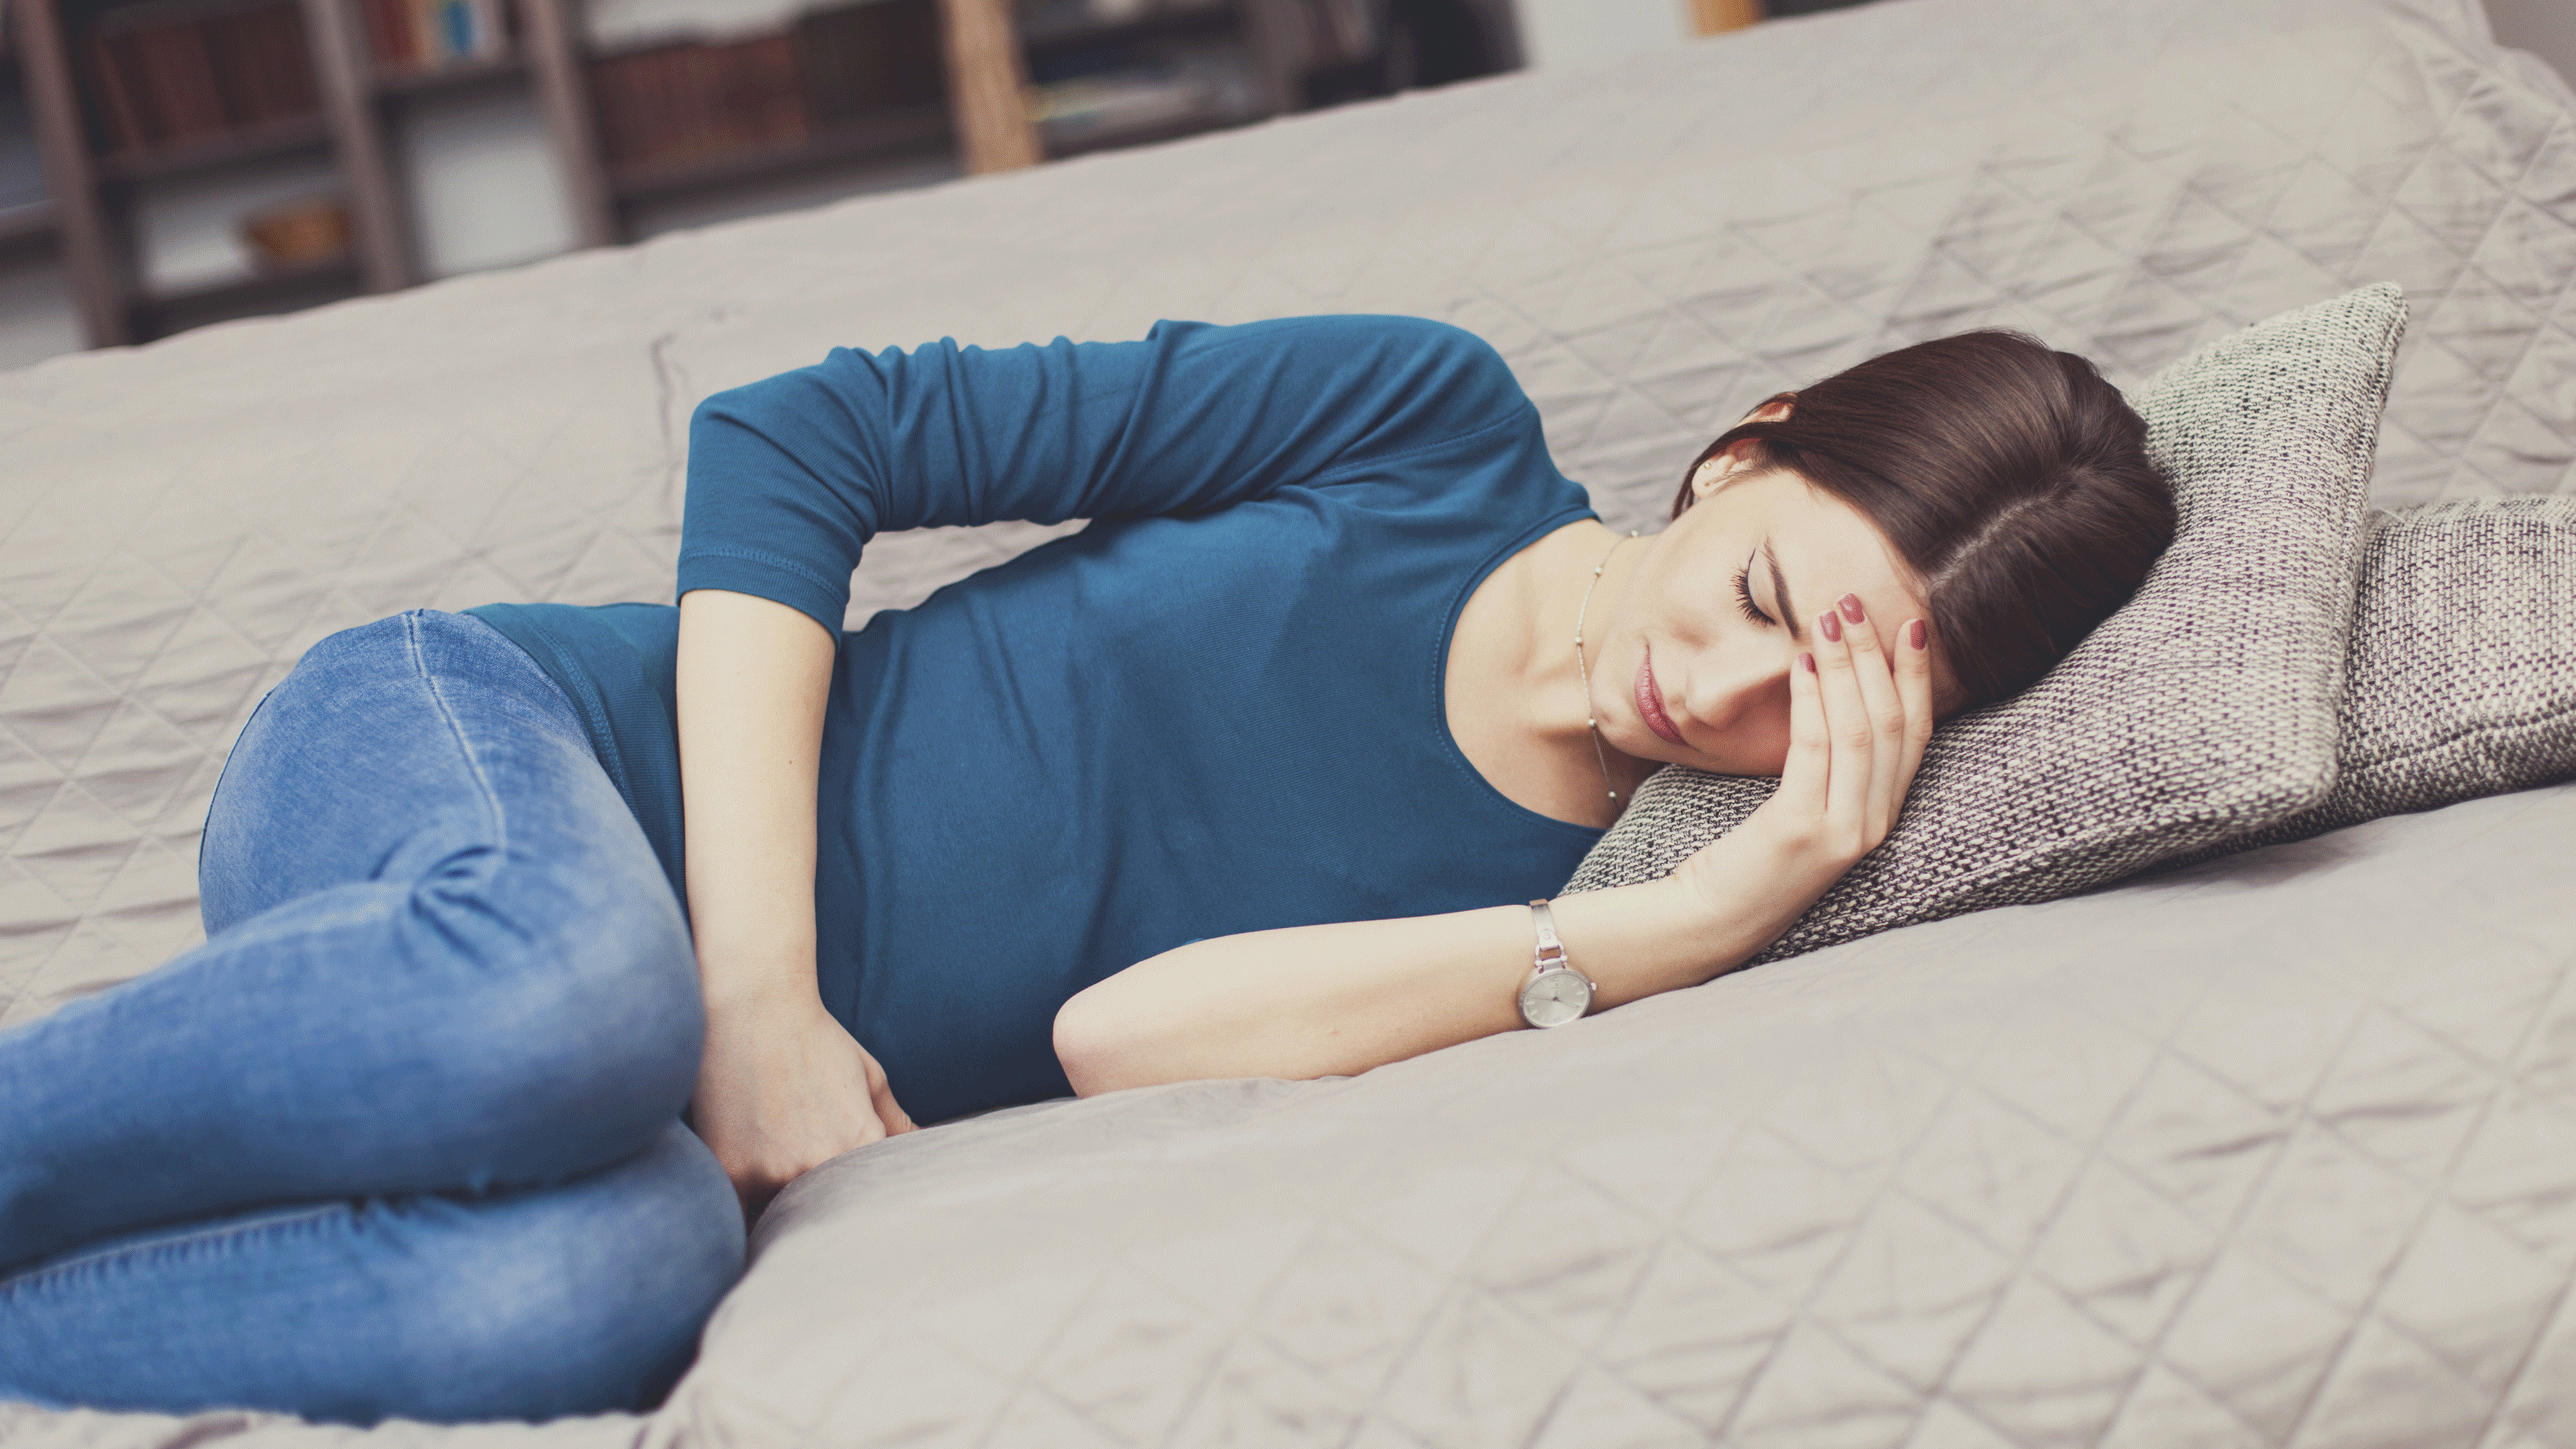 Schmerzfrei schlafen während der Regelblutung Die richtige Schlafposition kann helfen